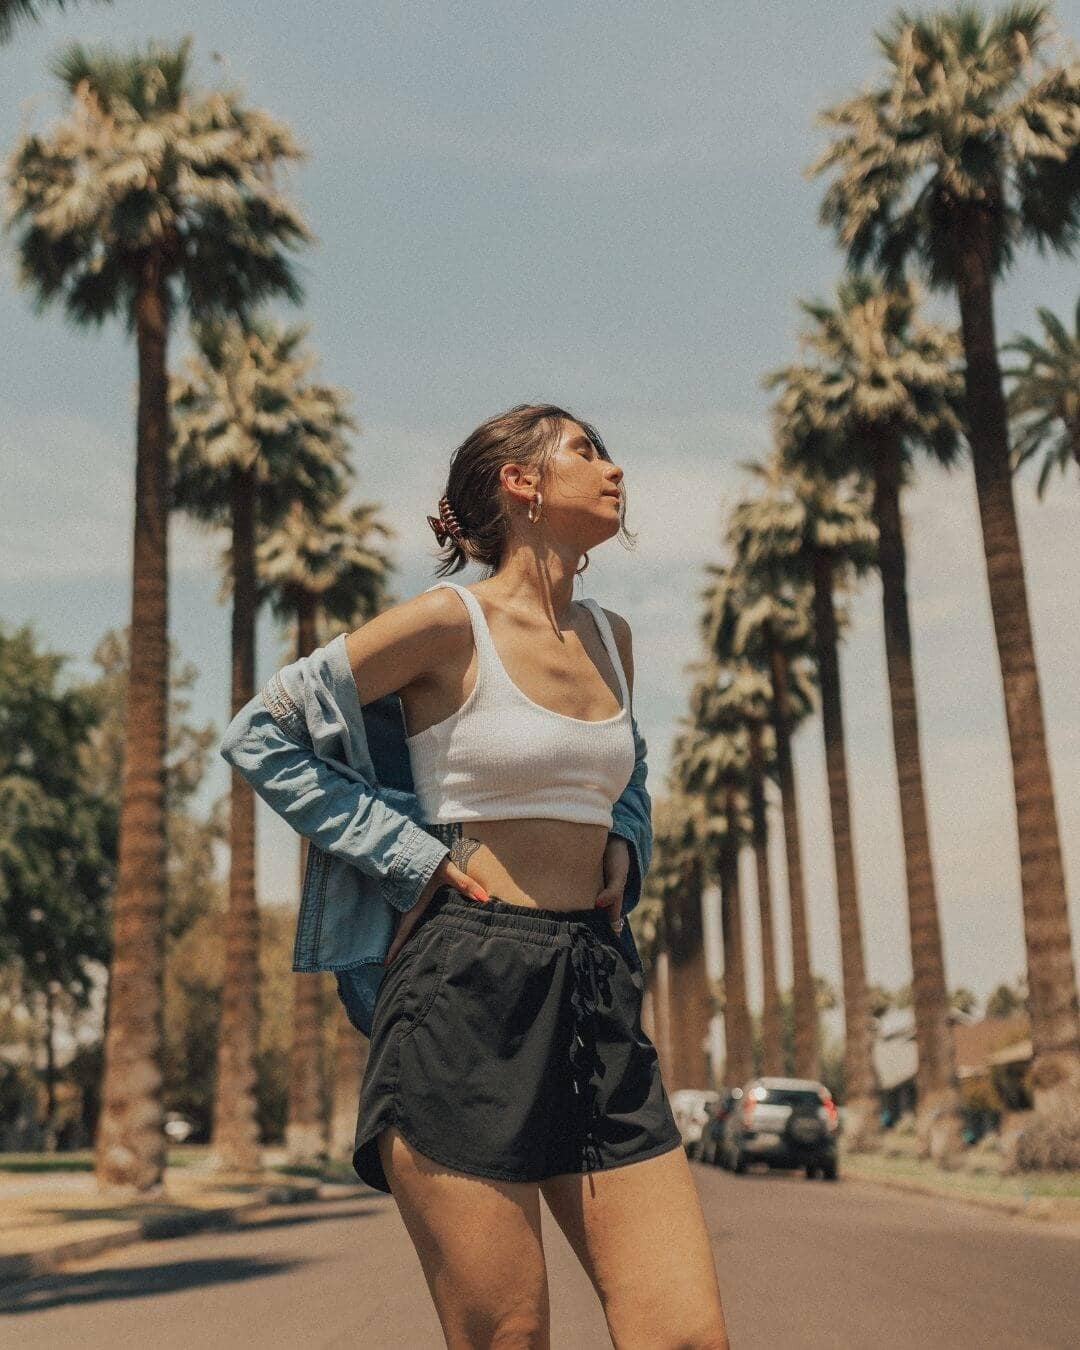 Girl standing on Portland Street in downtown Phoenix